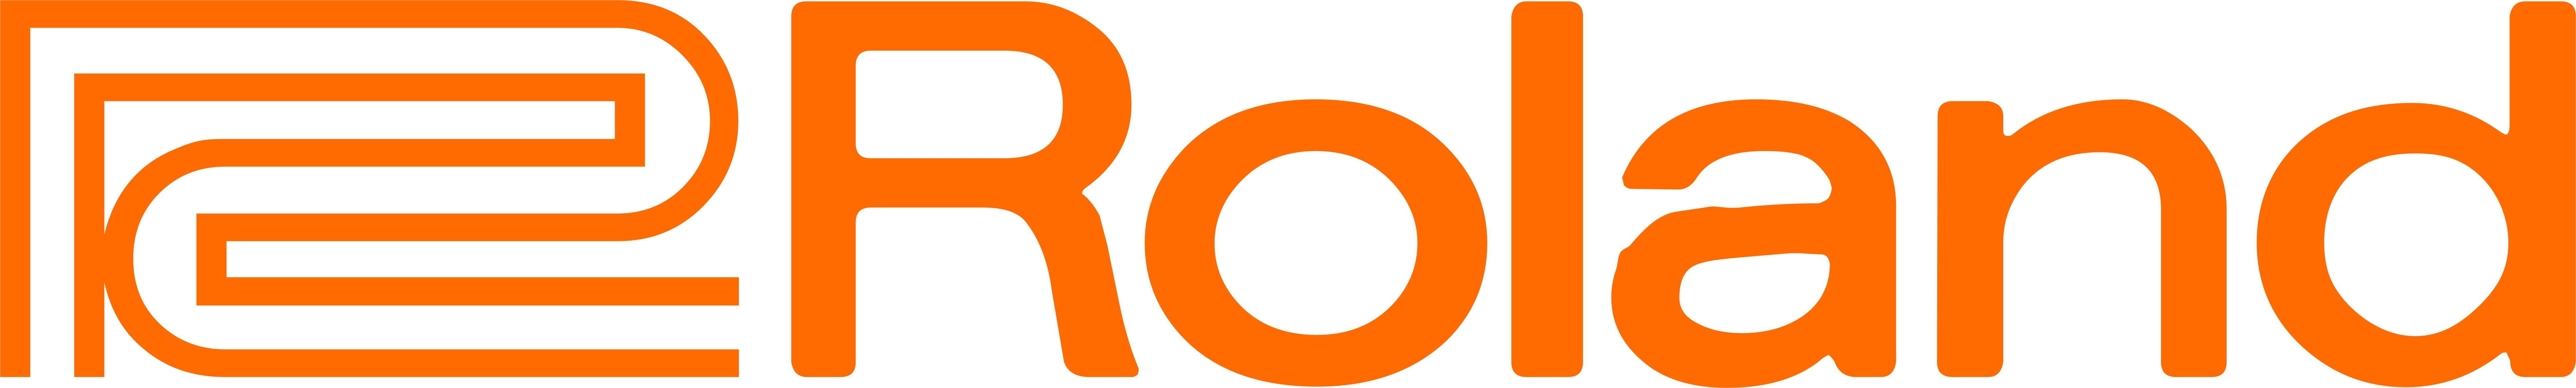 Afbeeldingsresultaat voor roland logo